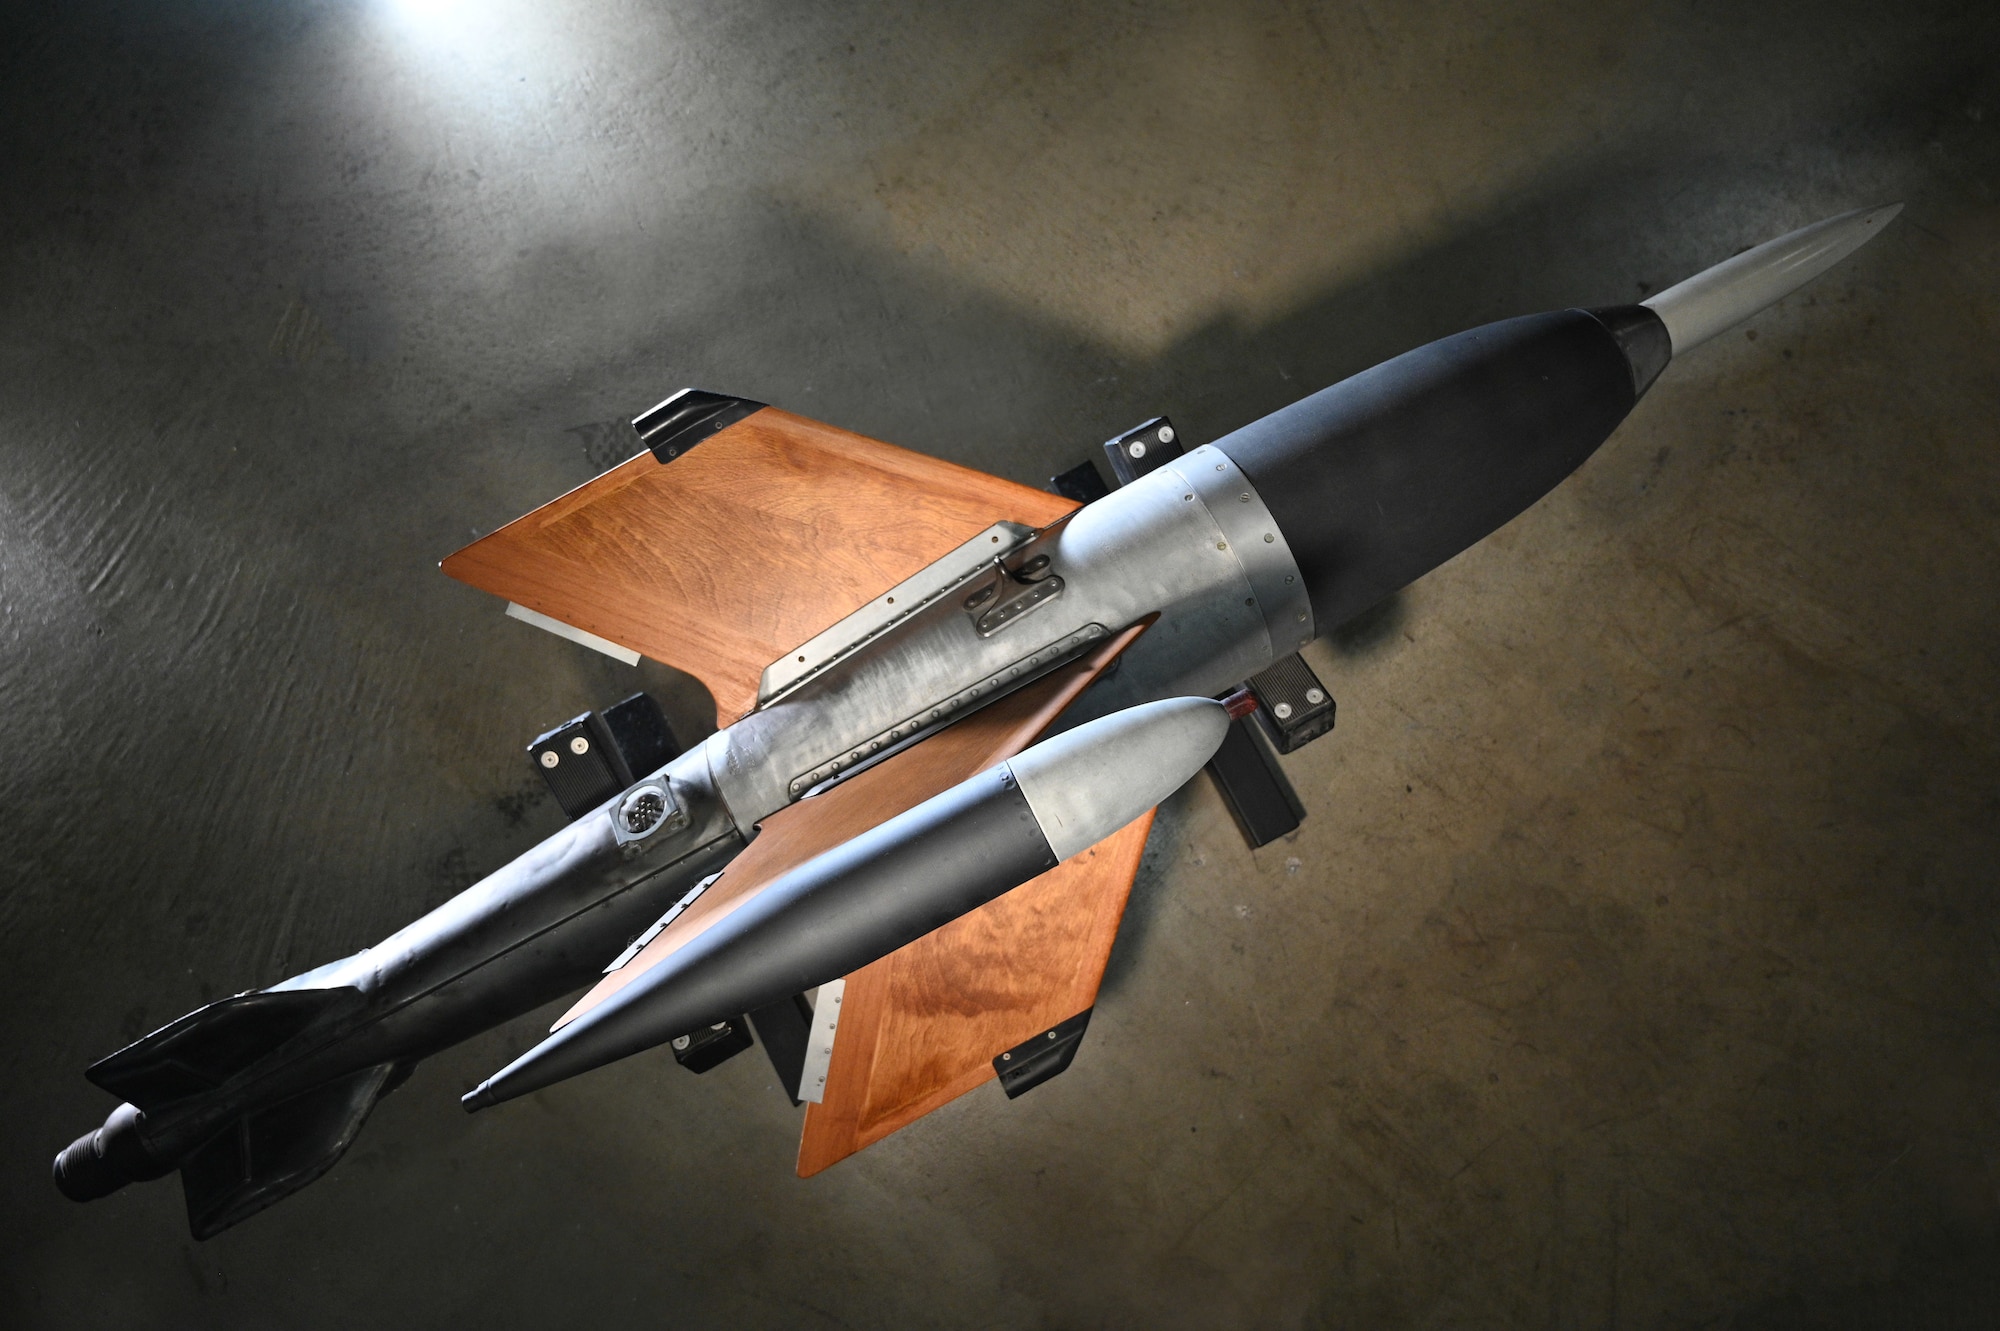 Ruhrstahl X-4 Air-to-Air Missile